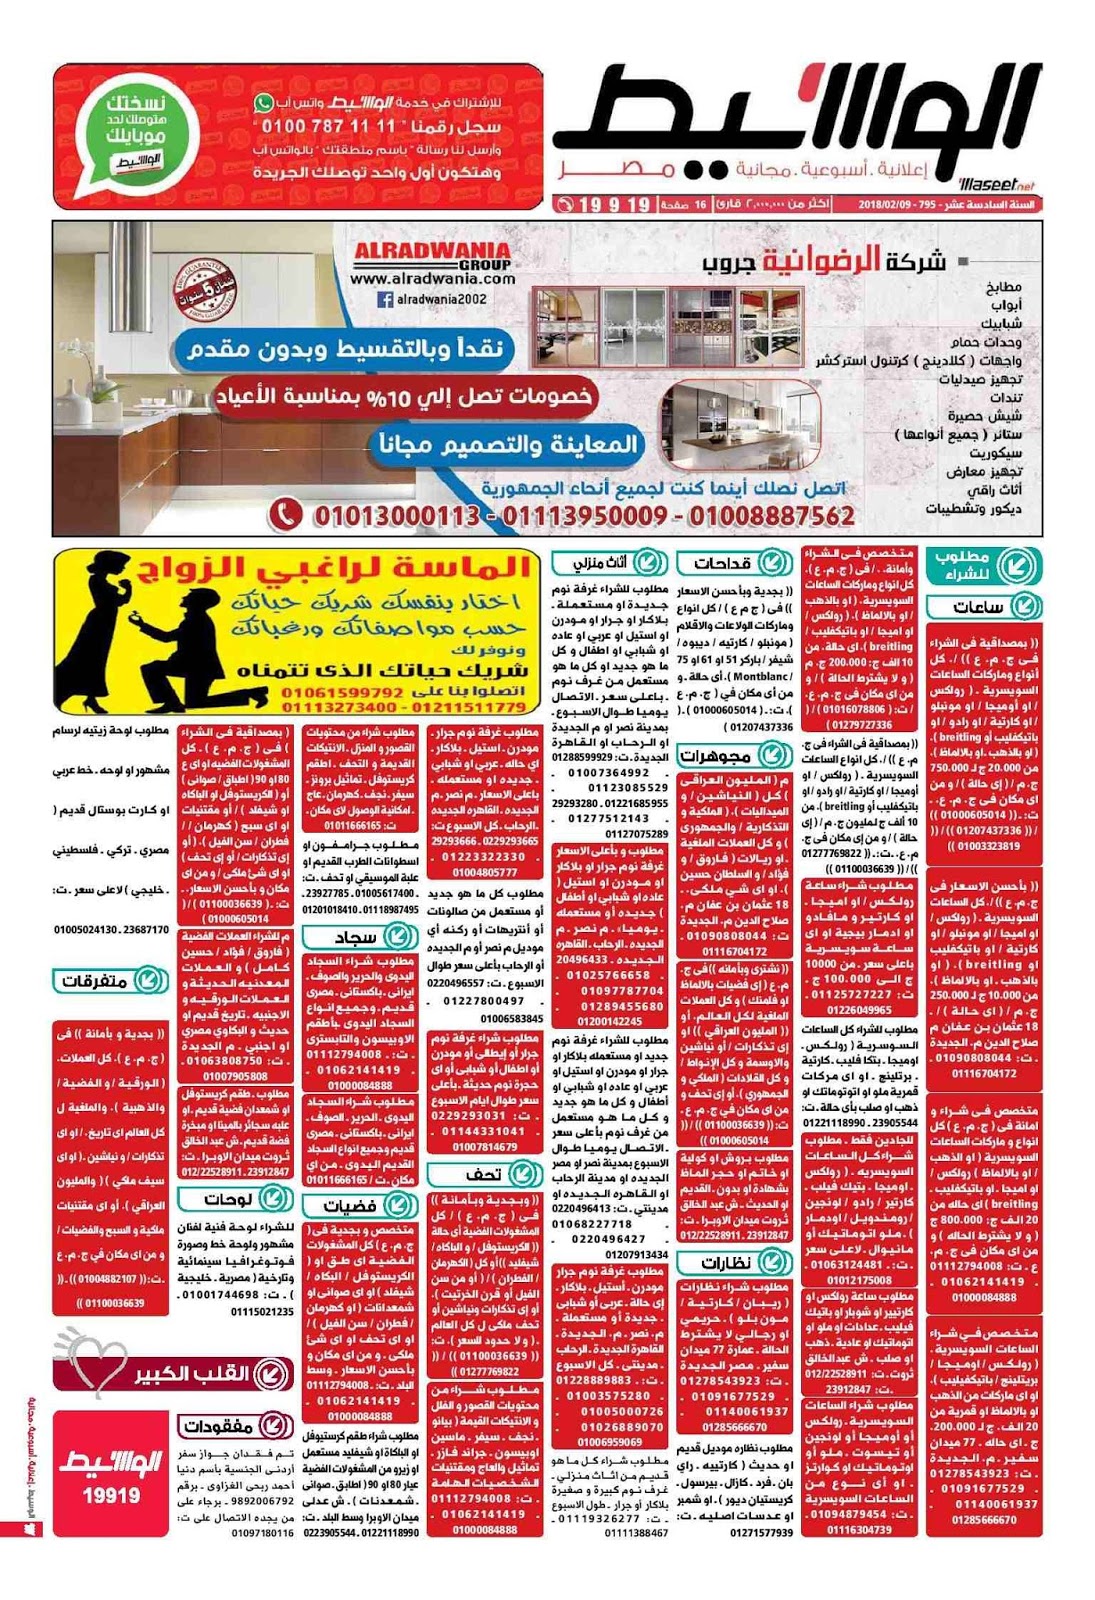 وظائف الوسيط مصر الجمعة 9 فبراير 2018 واعلانات الوسيط